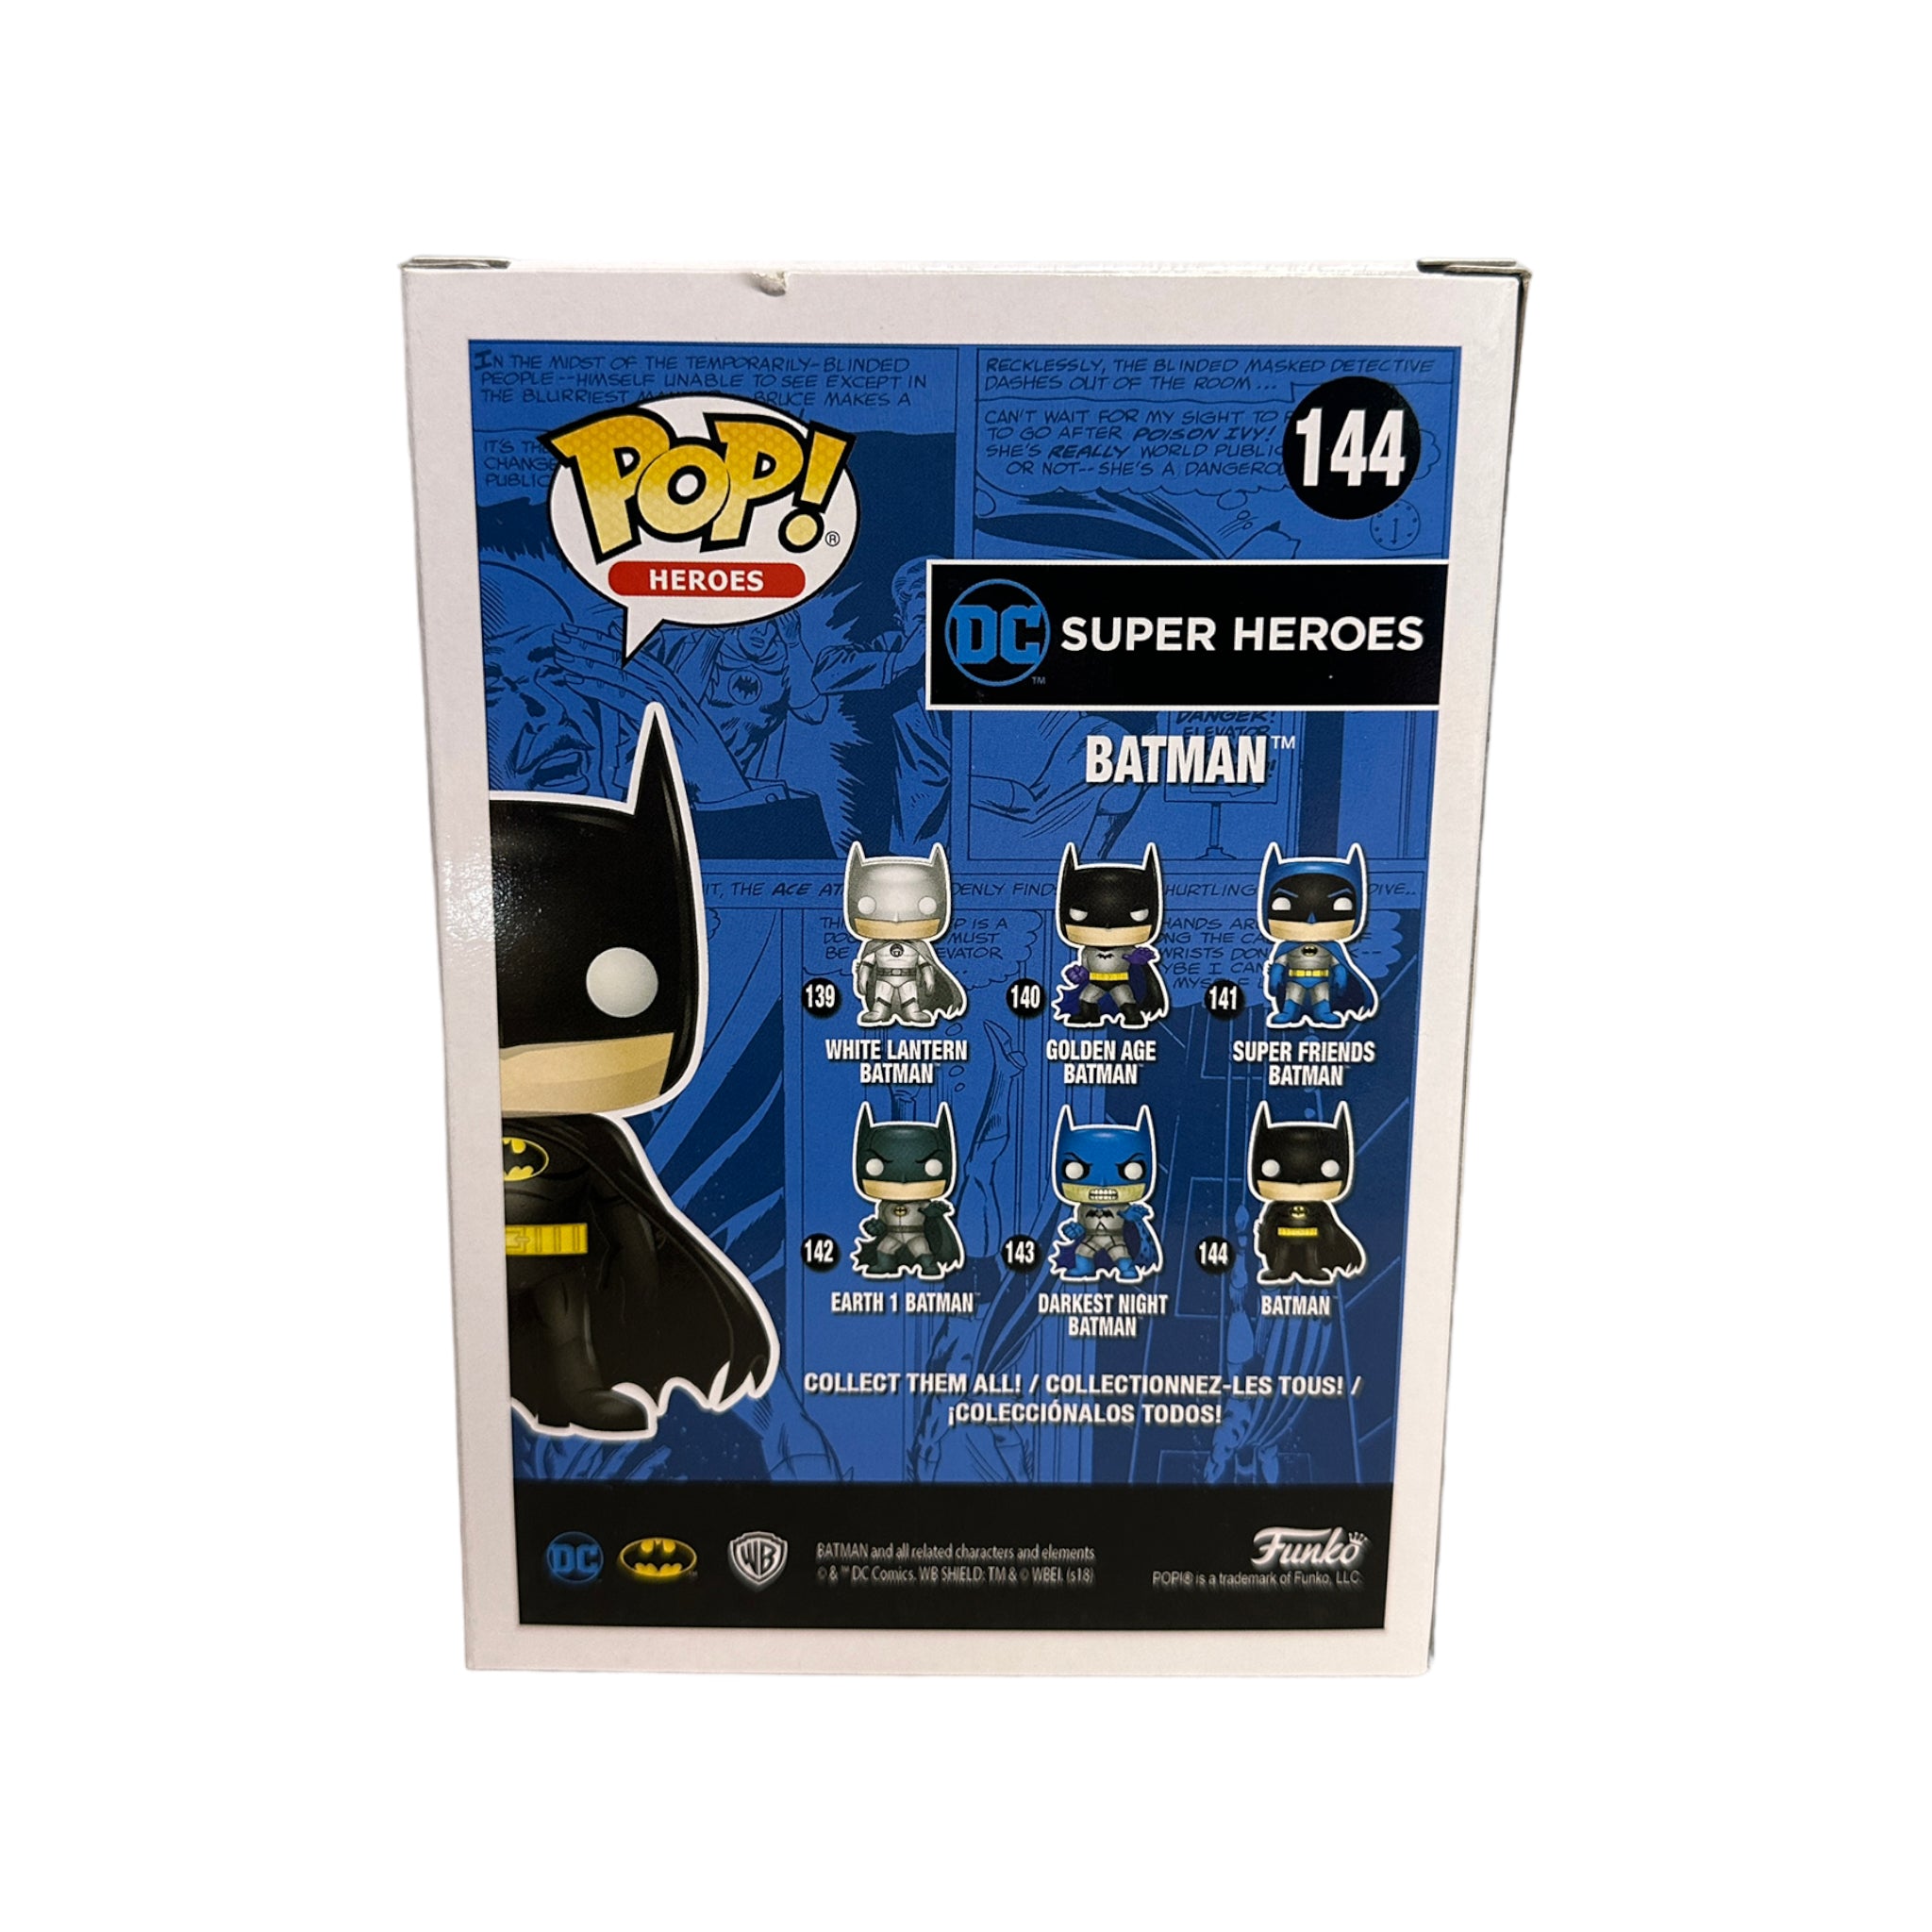 Batman #144 (Green Chrome) Funko Pop! - DC Super Heroes - ECCC 2018 Official Convention Exclusive LE1500 Pcs - Condition 8.5/10